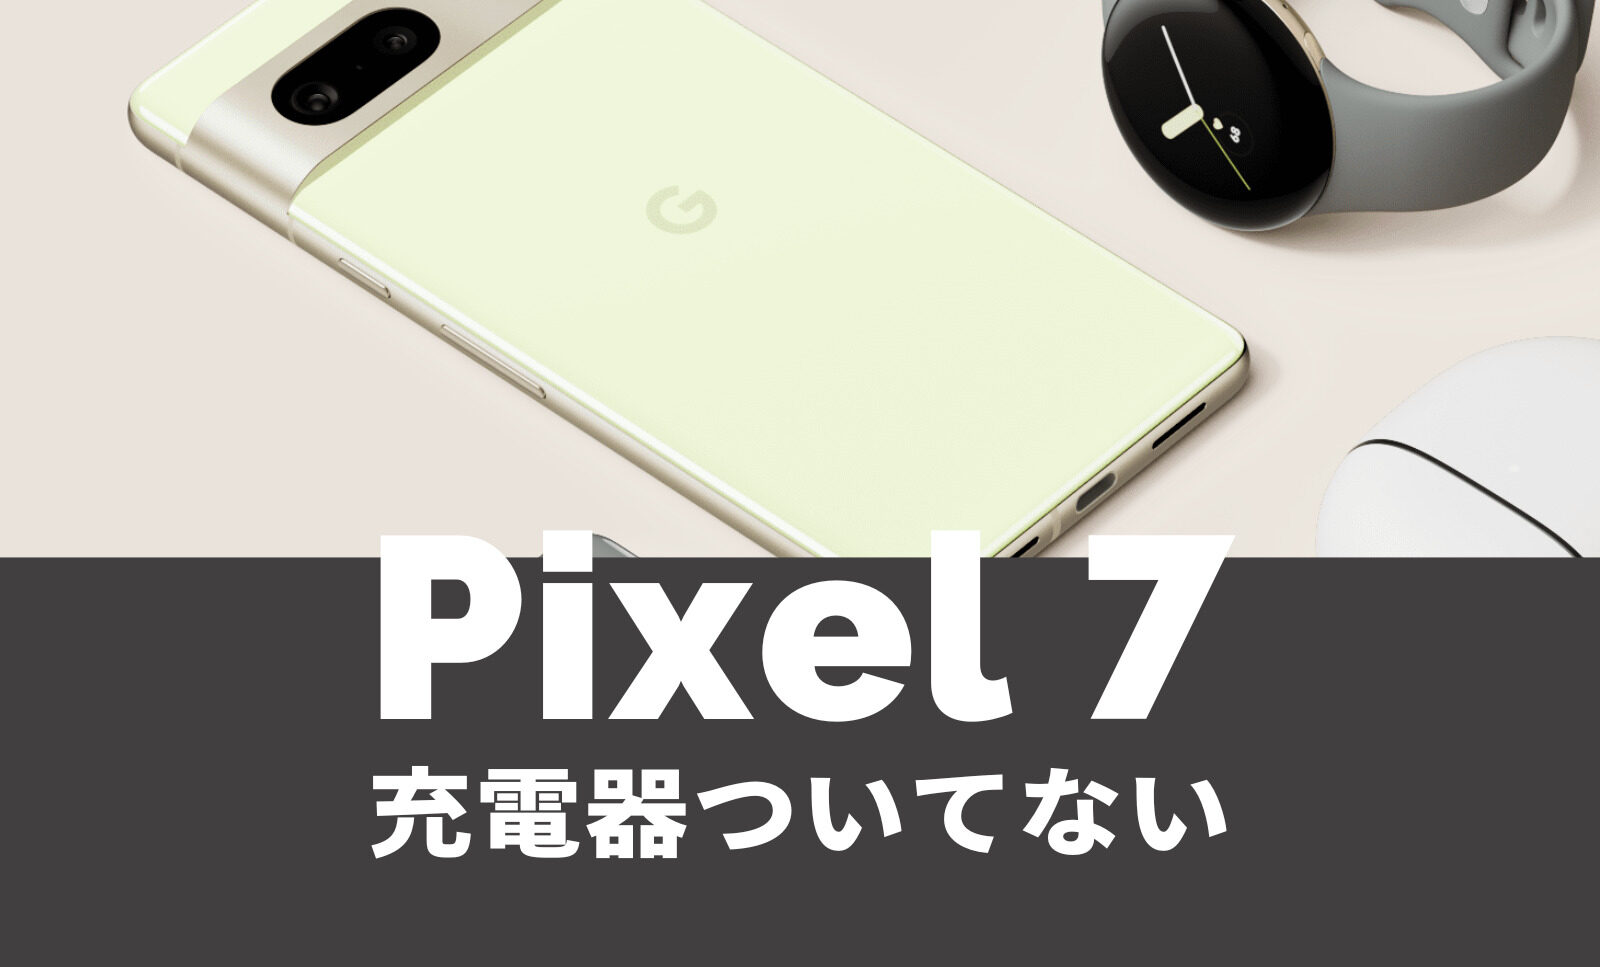 Google Pixel 7と7 Proはドコモで発売される？ドコモ回線&バンドで使える？【ピクセル7】のサムネイル画像